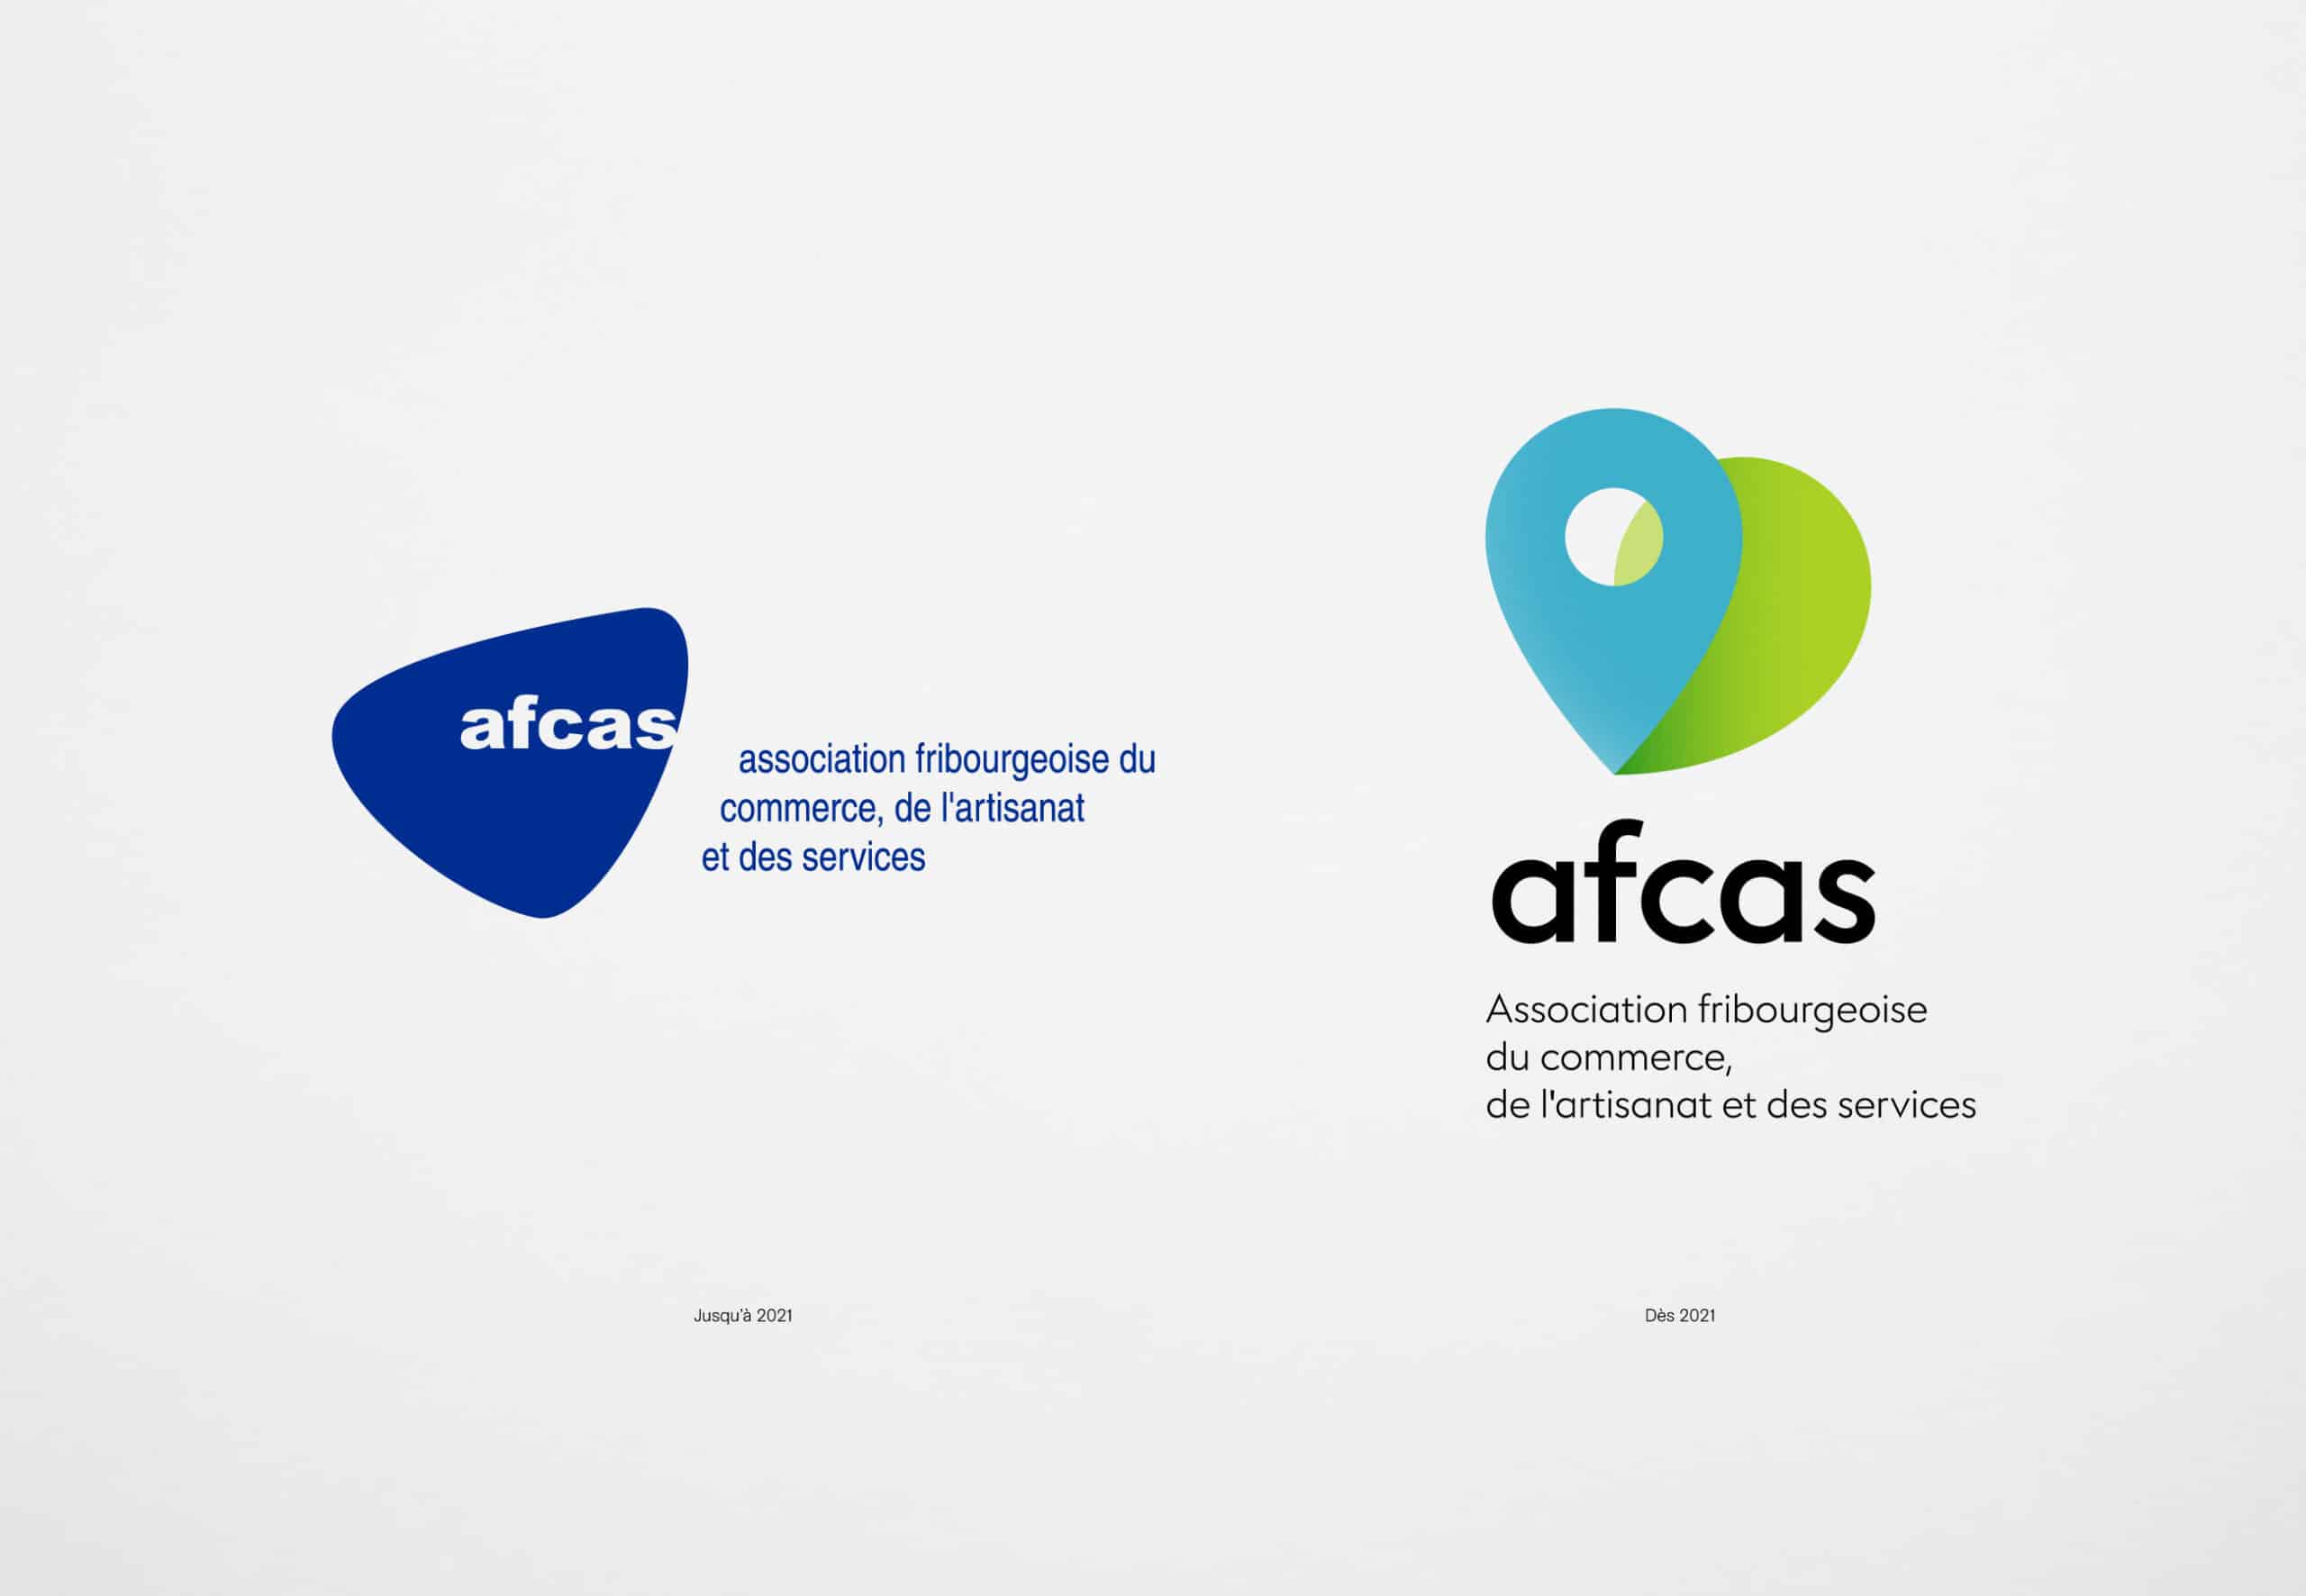 Logos de l'AFCAS avant et après 2021.